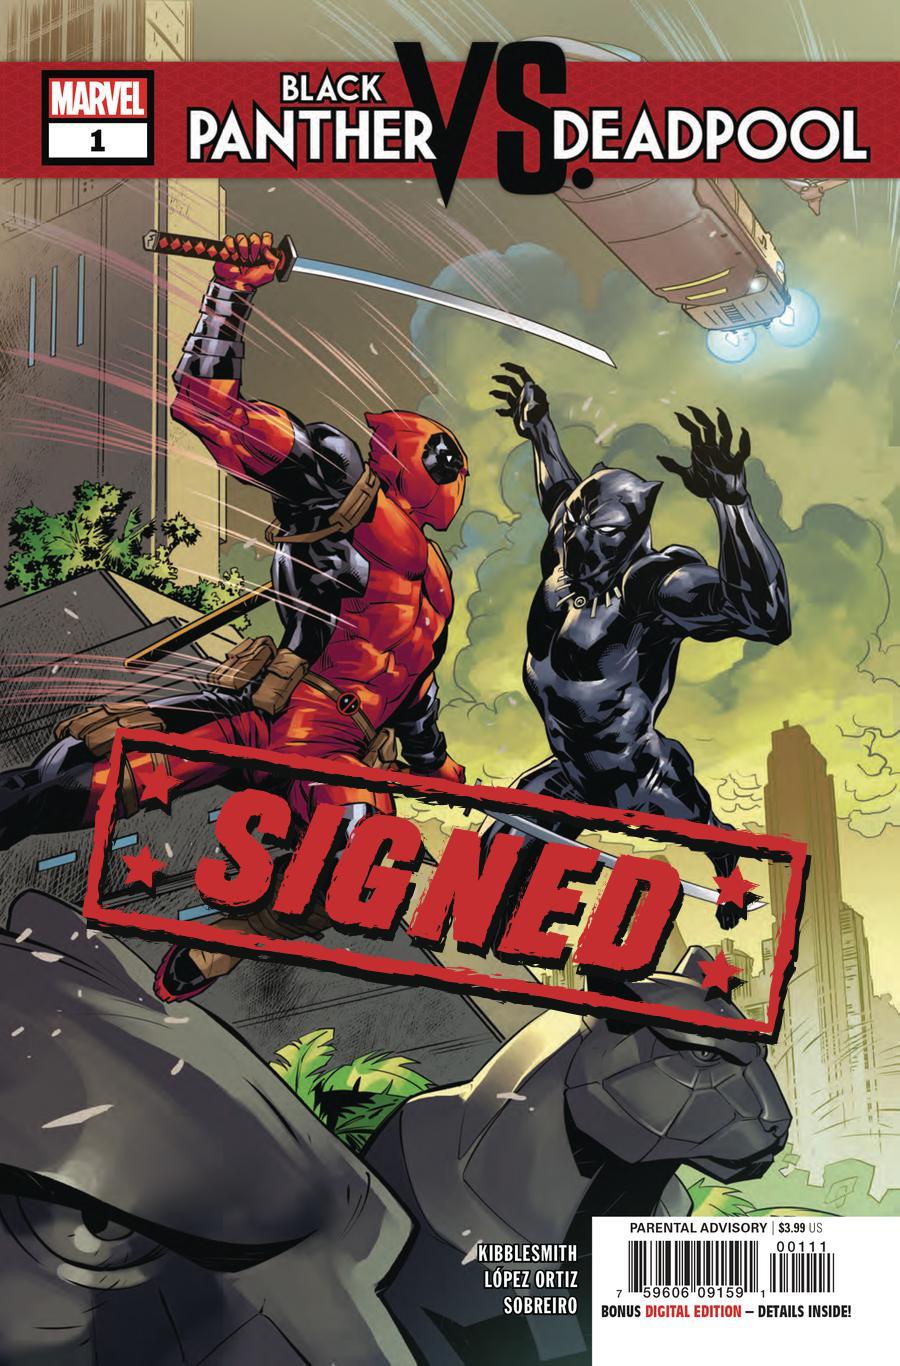 Black Panther vs Deadpool #1 Cover E Regular Ryan Benjamin Cover Signed By Ricardo Lopez Ortiz